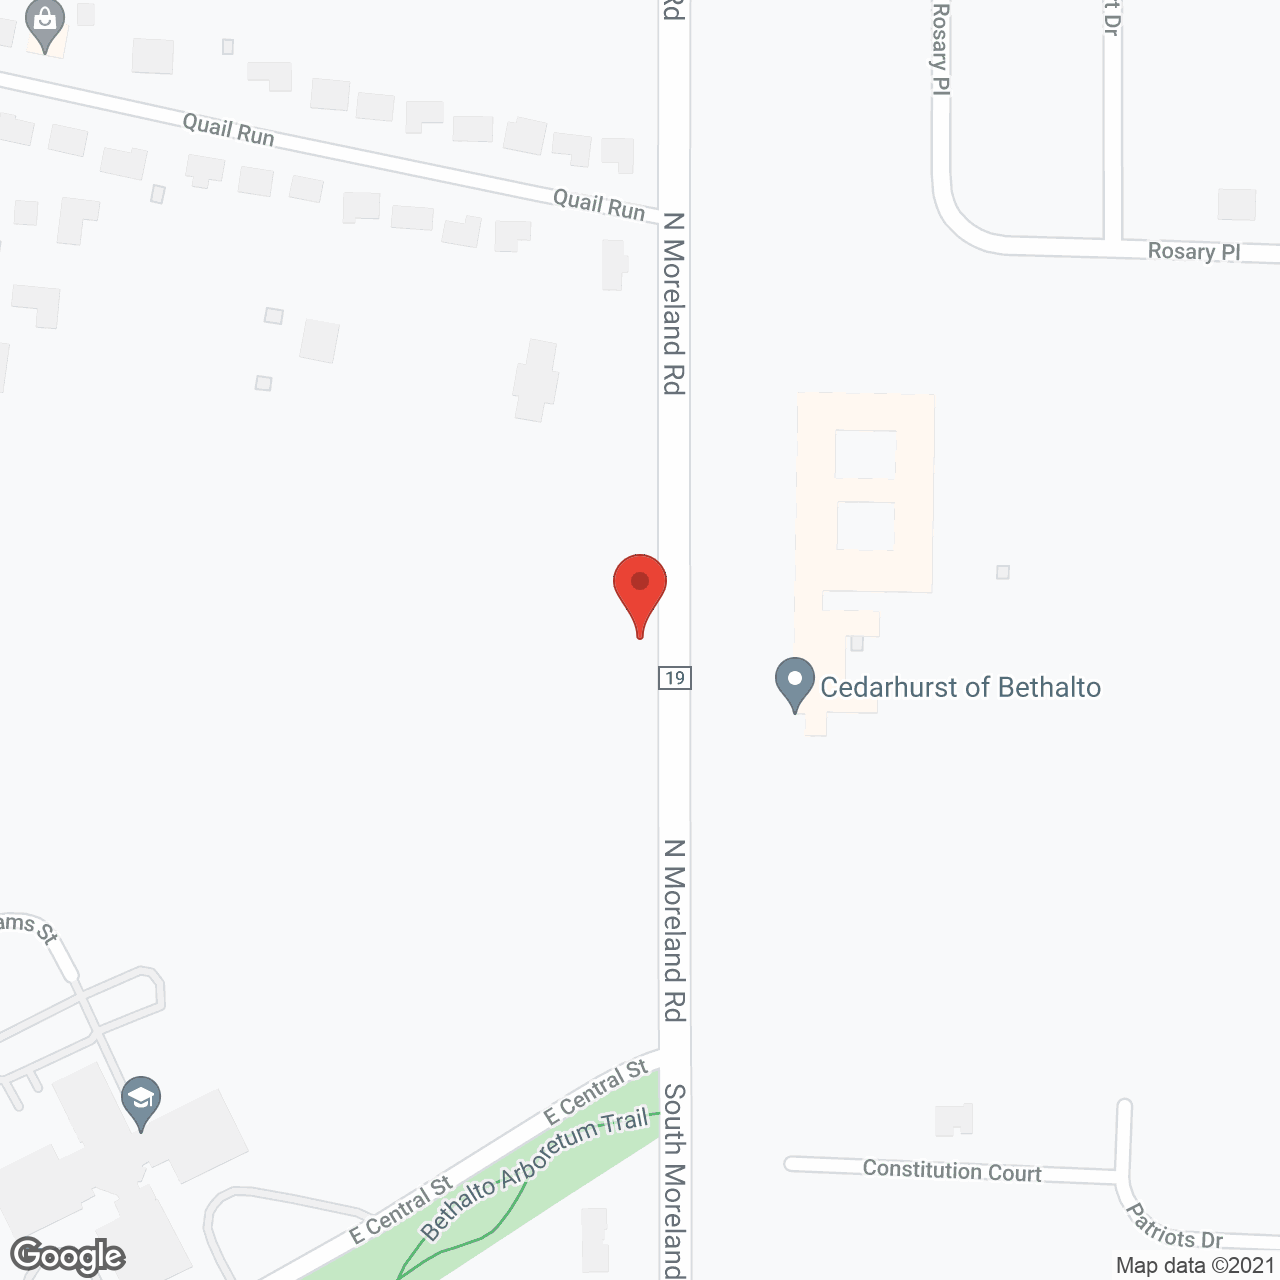 Cedarhurst of Bethalto in google map